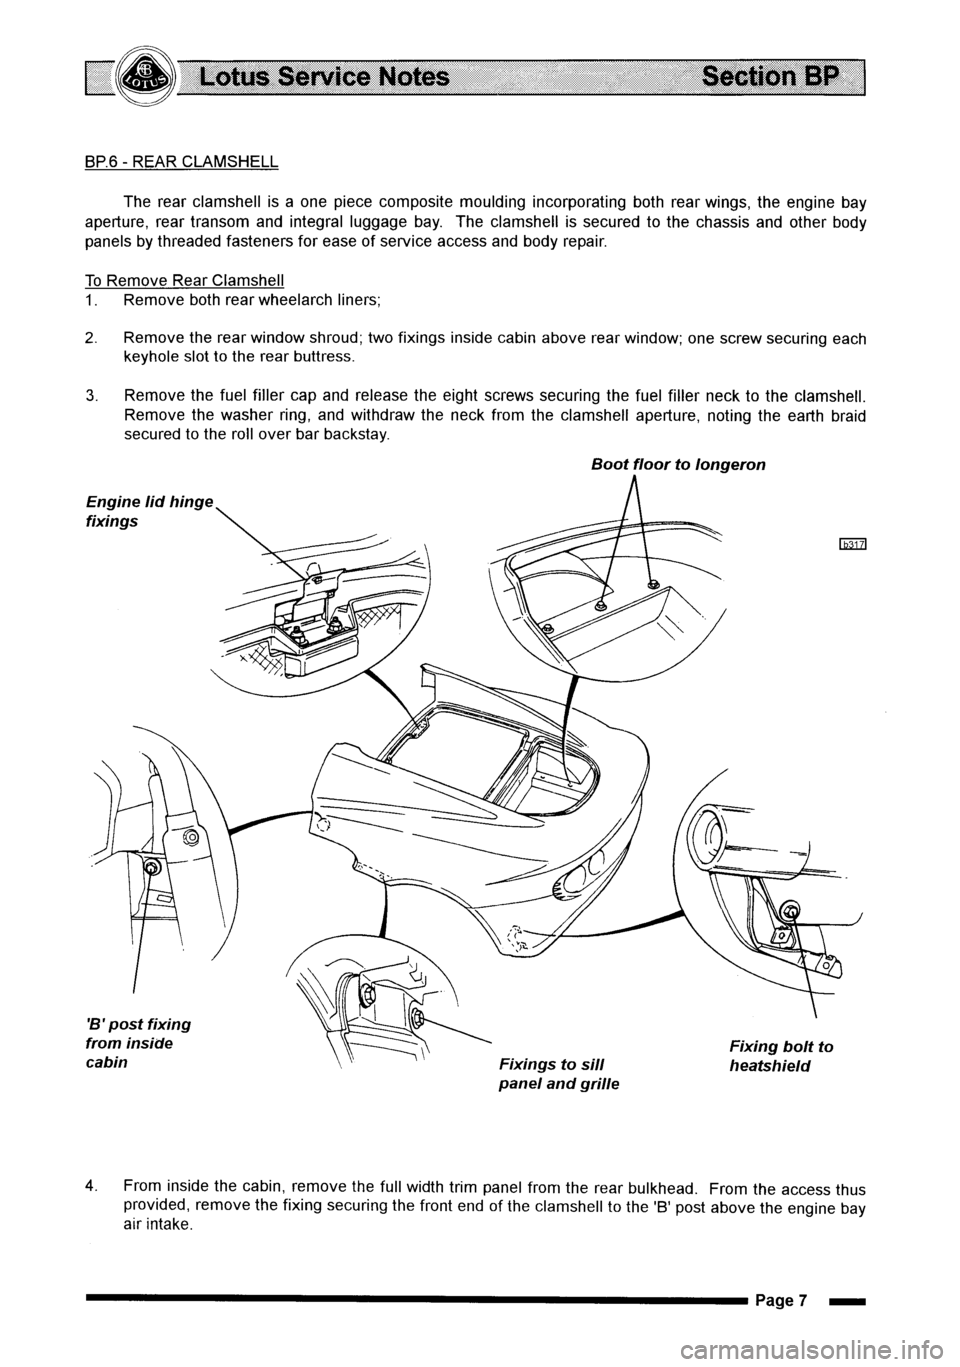 LOTUS ELISE 2001  Service Repair Manual 